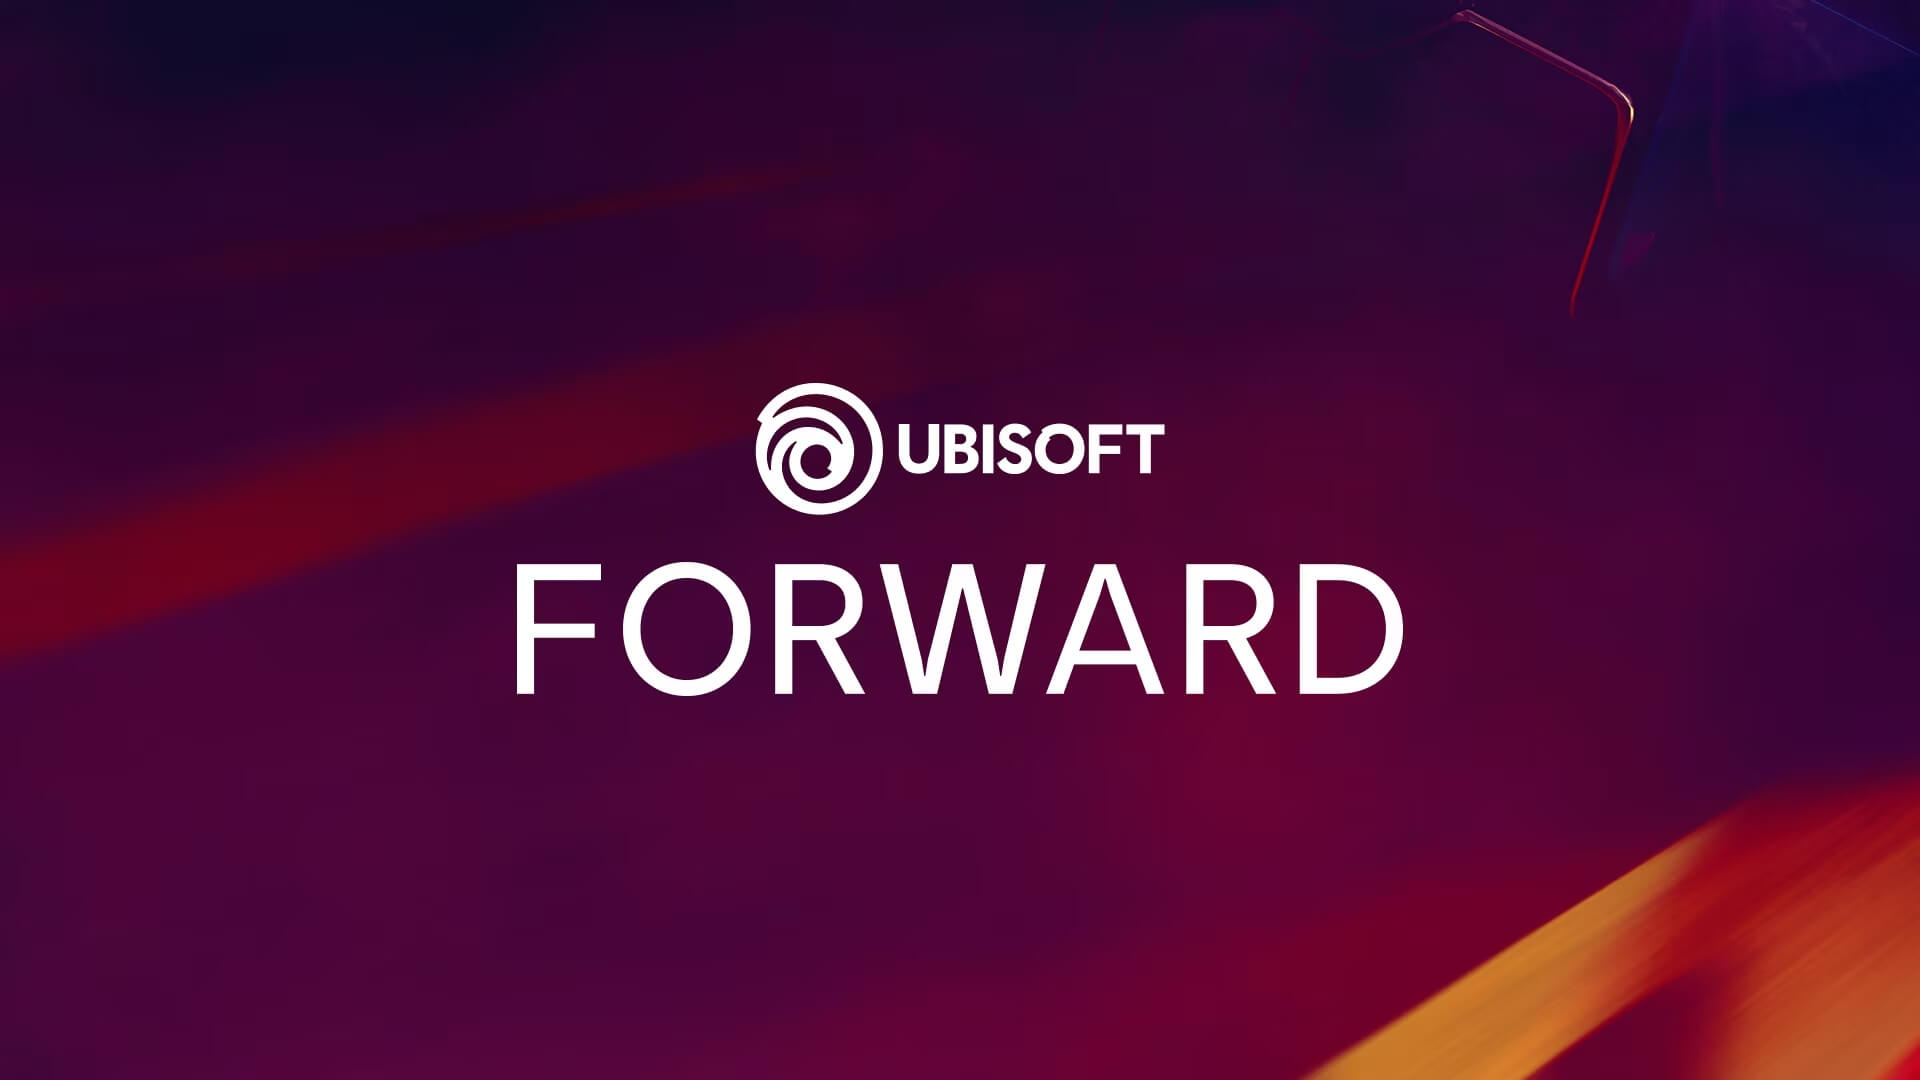 Ubisoft Forward Banner Image